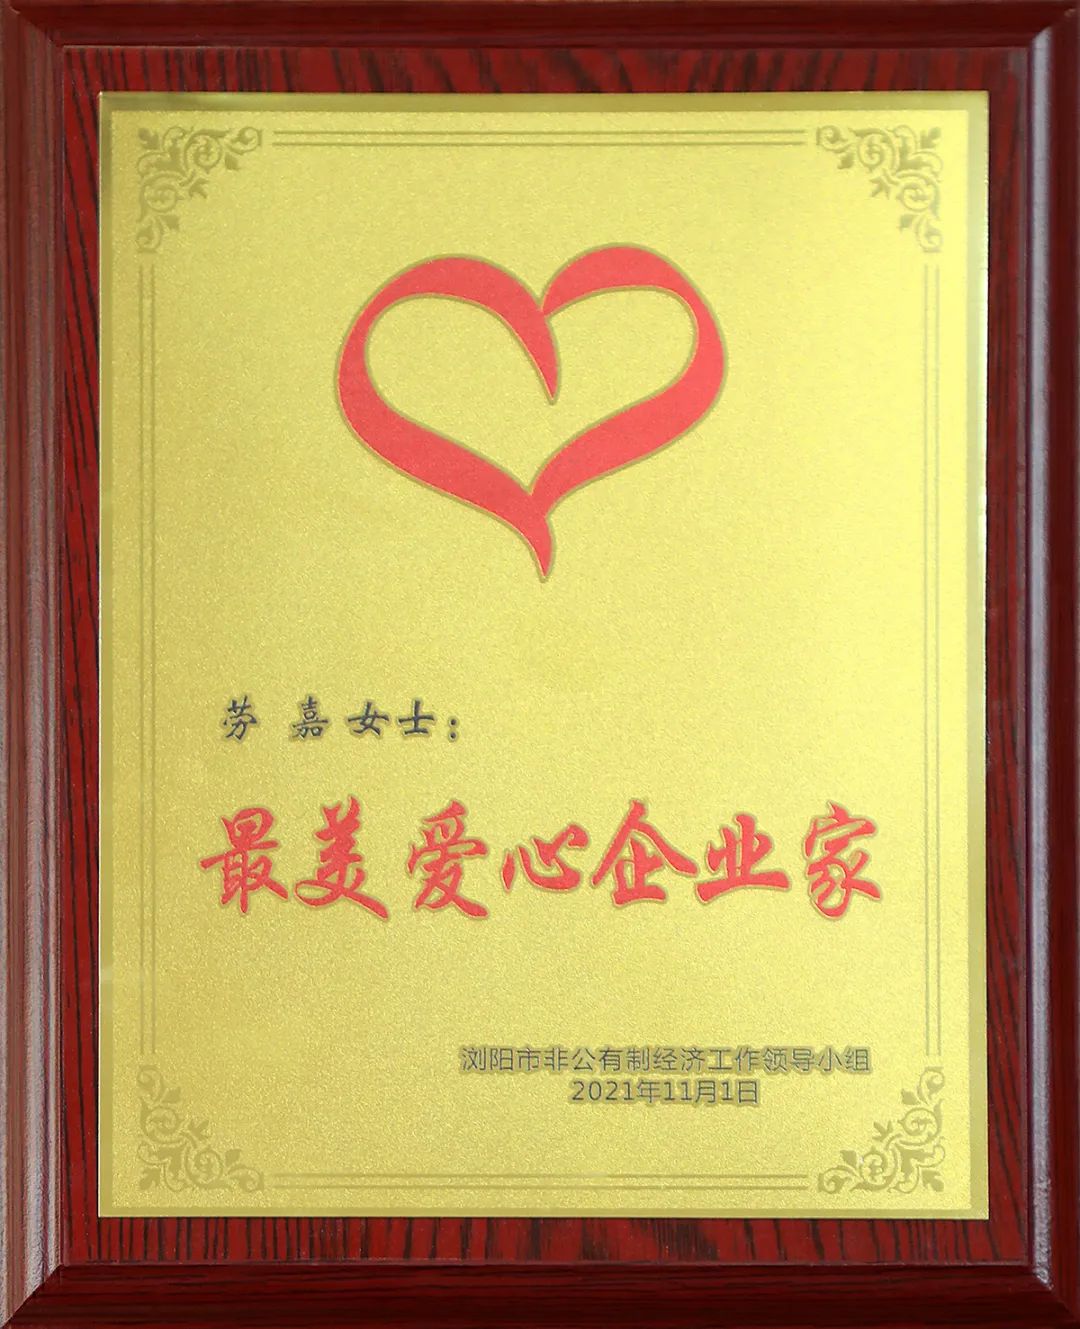 绿之韵集团董事、总裁劳嘉获评浏阳市“最美爱心企业家”称号